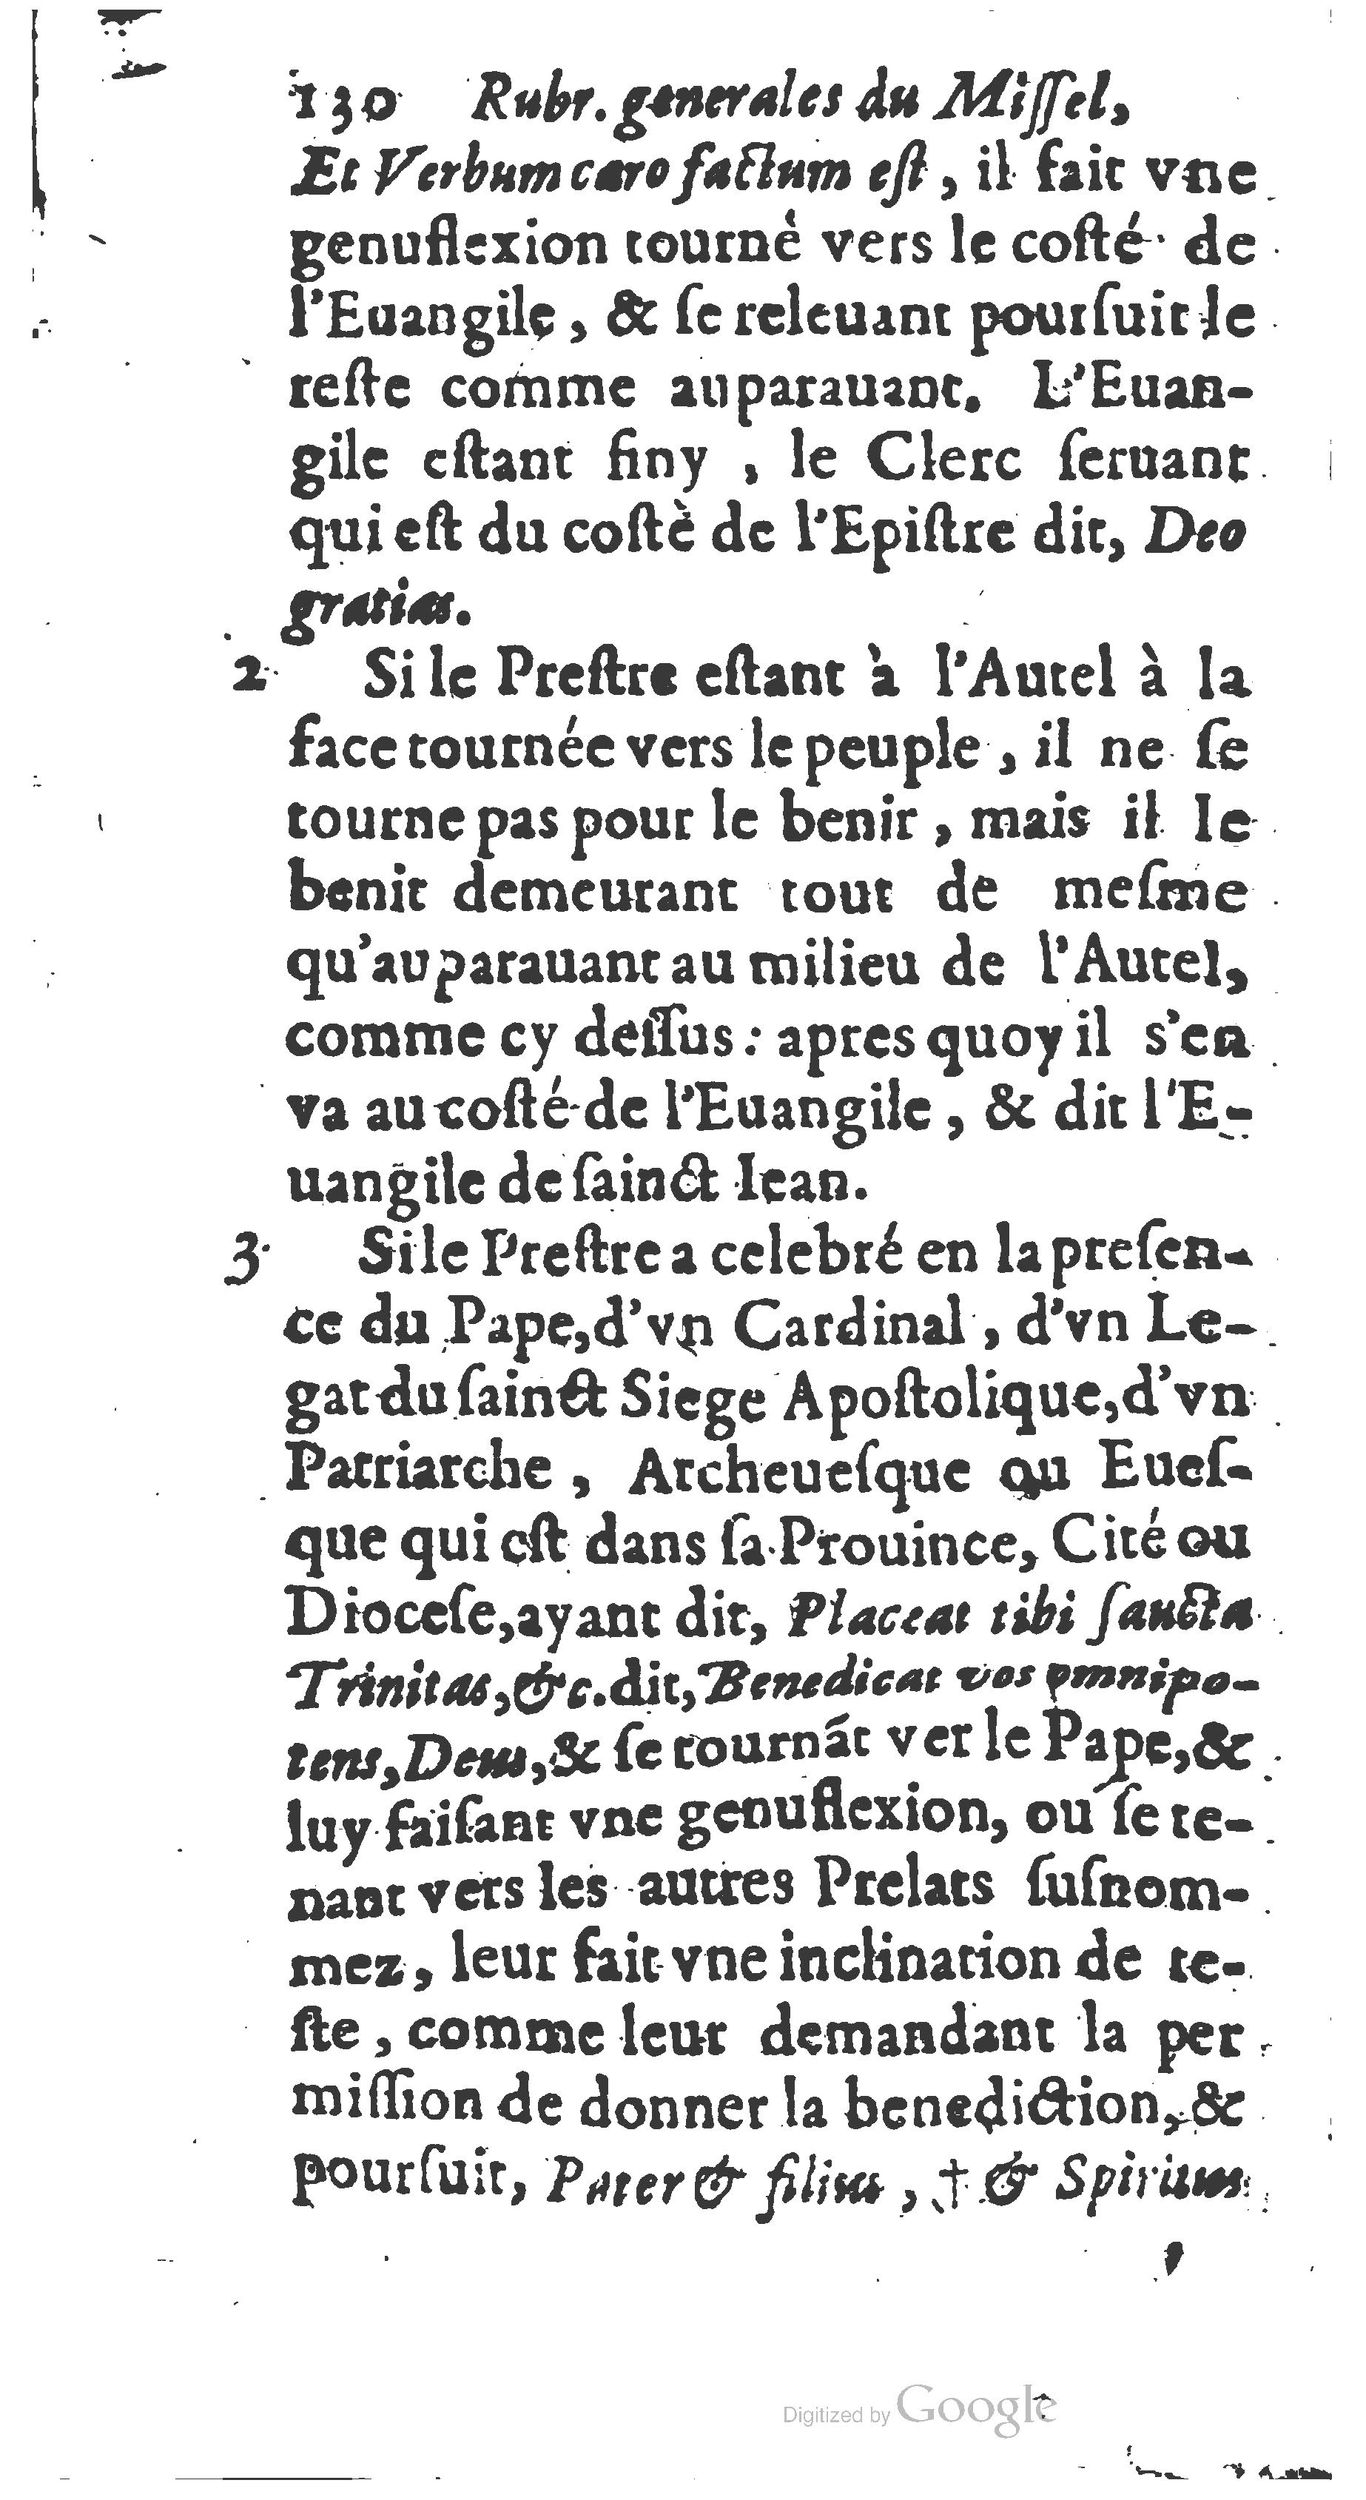 1651 Abrégé du trésor des cérémonies ecclésiastiques Guillermet_BM Lyon_Page_149.jpg